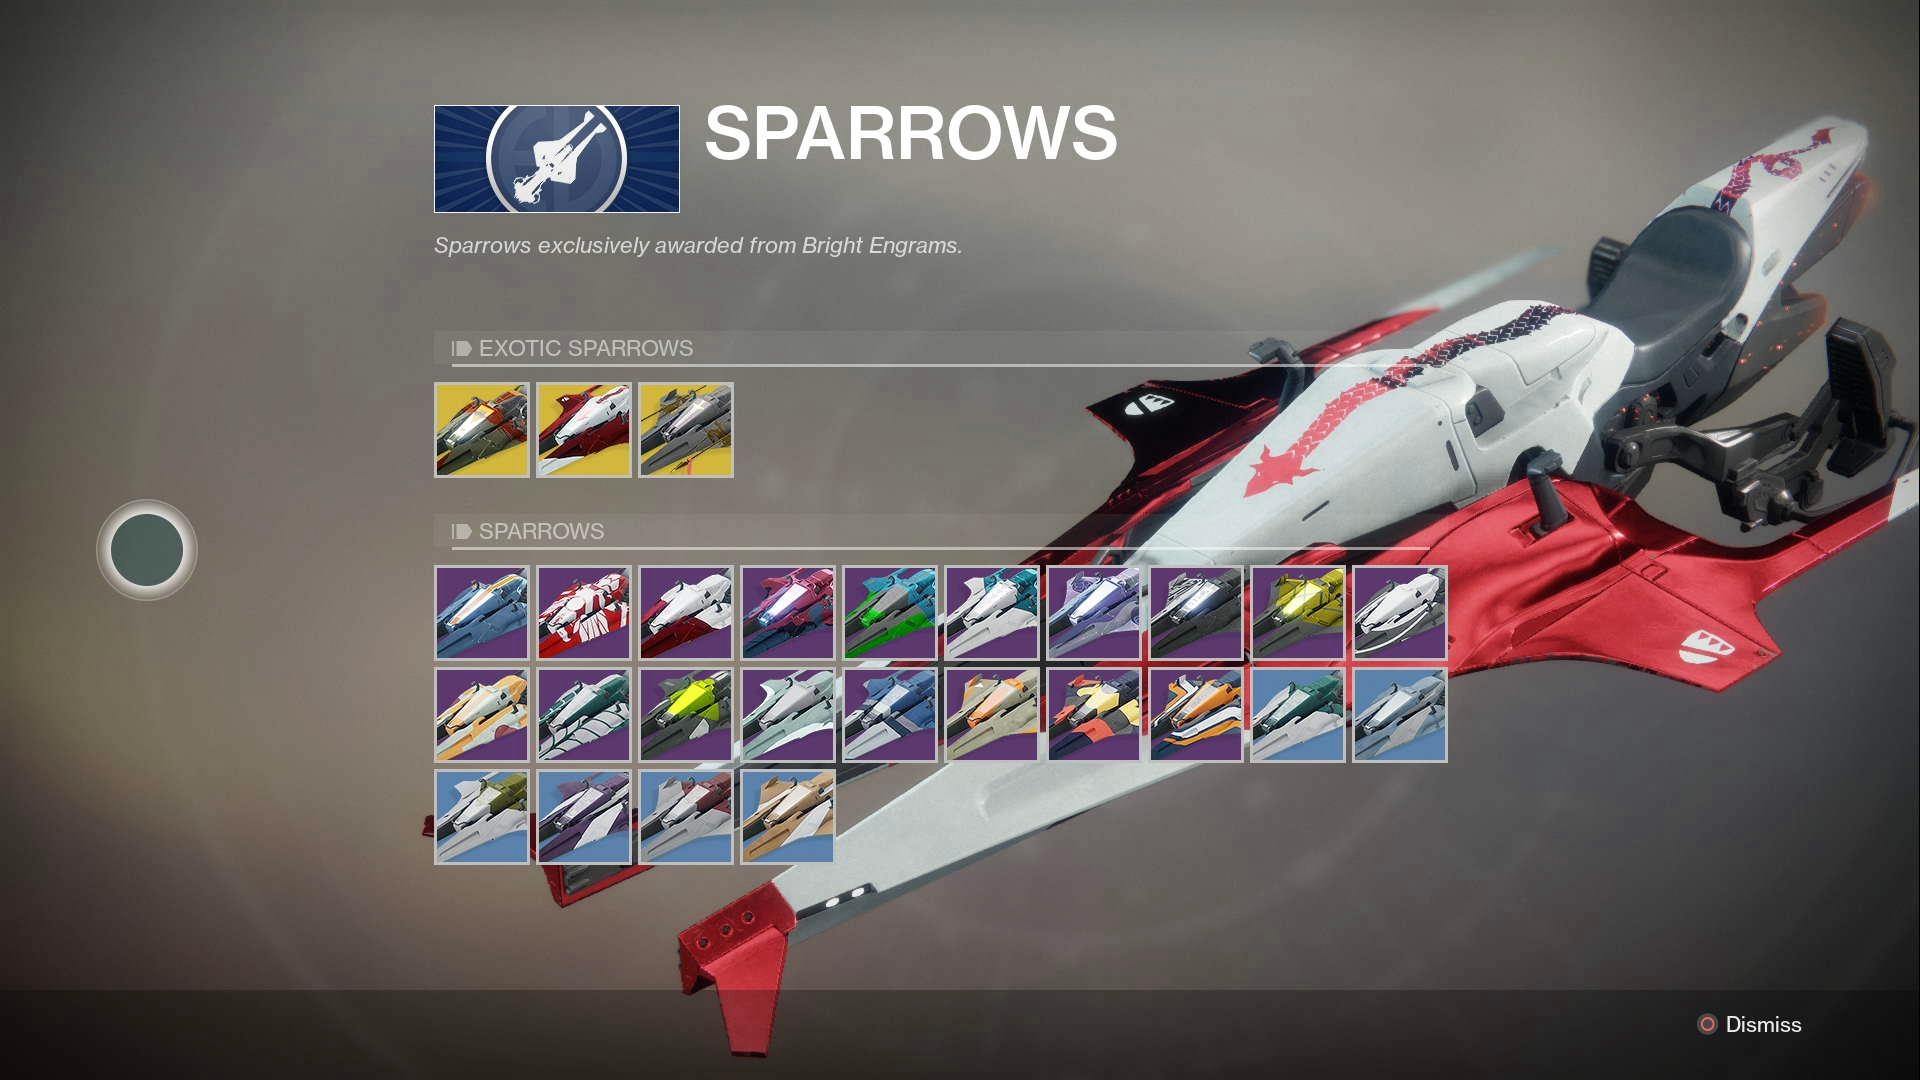 Here's how you get a Sparrow in Destiny 2 GamesRadar+